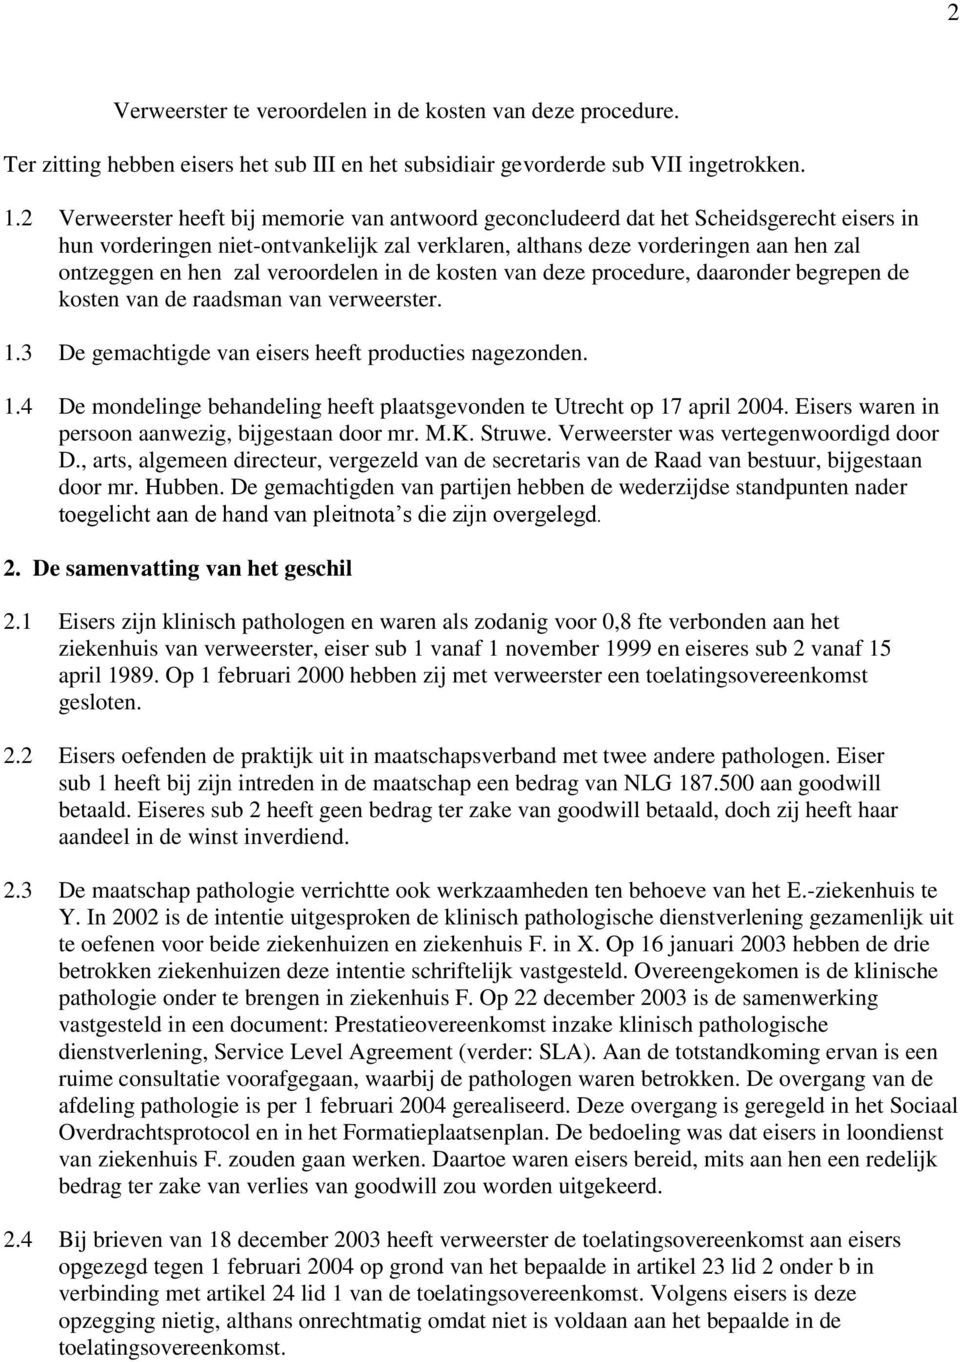 veroordelen in de kosten van deze procedure, daaronder begrepen de kosten van de raadsman van verweerster. 1.3 De gemachtigde van eisers heeft producties nagezonden. 1.4 De mondelinge behandeling heeft plaatsgevonden te Utrecht op 17 april 2004.